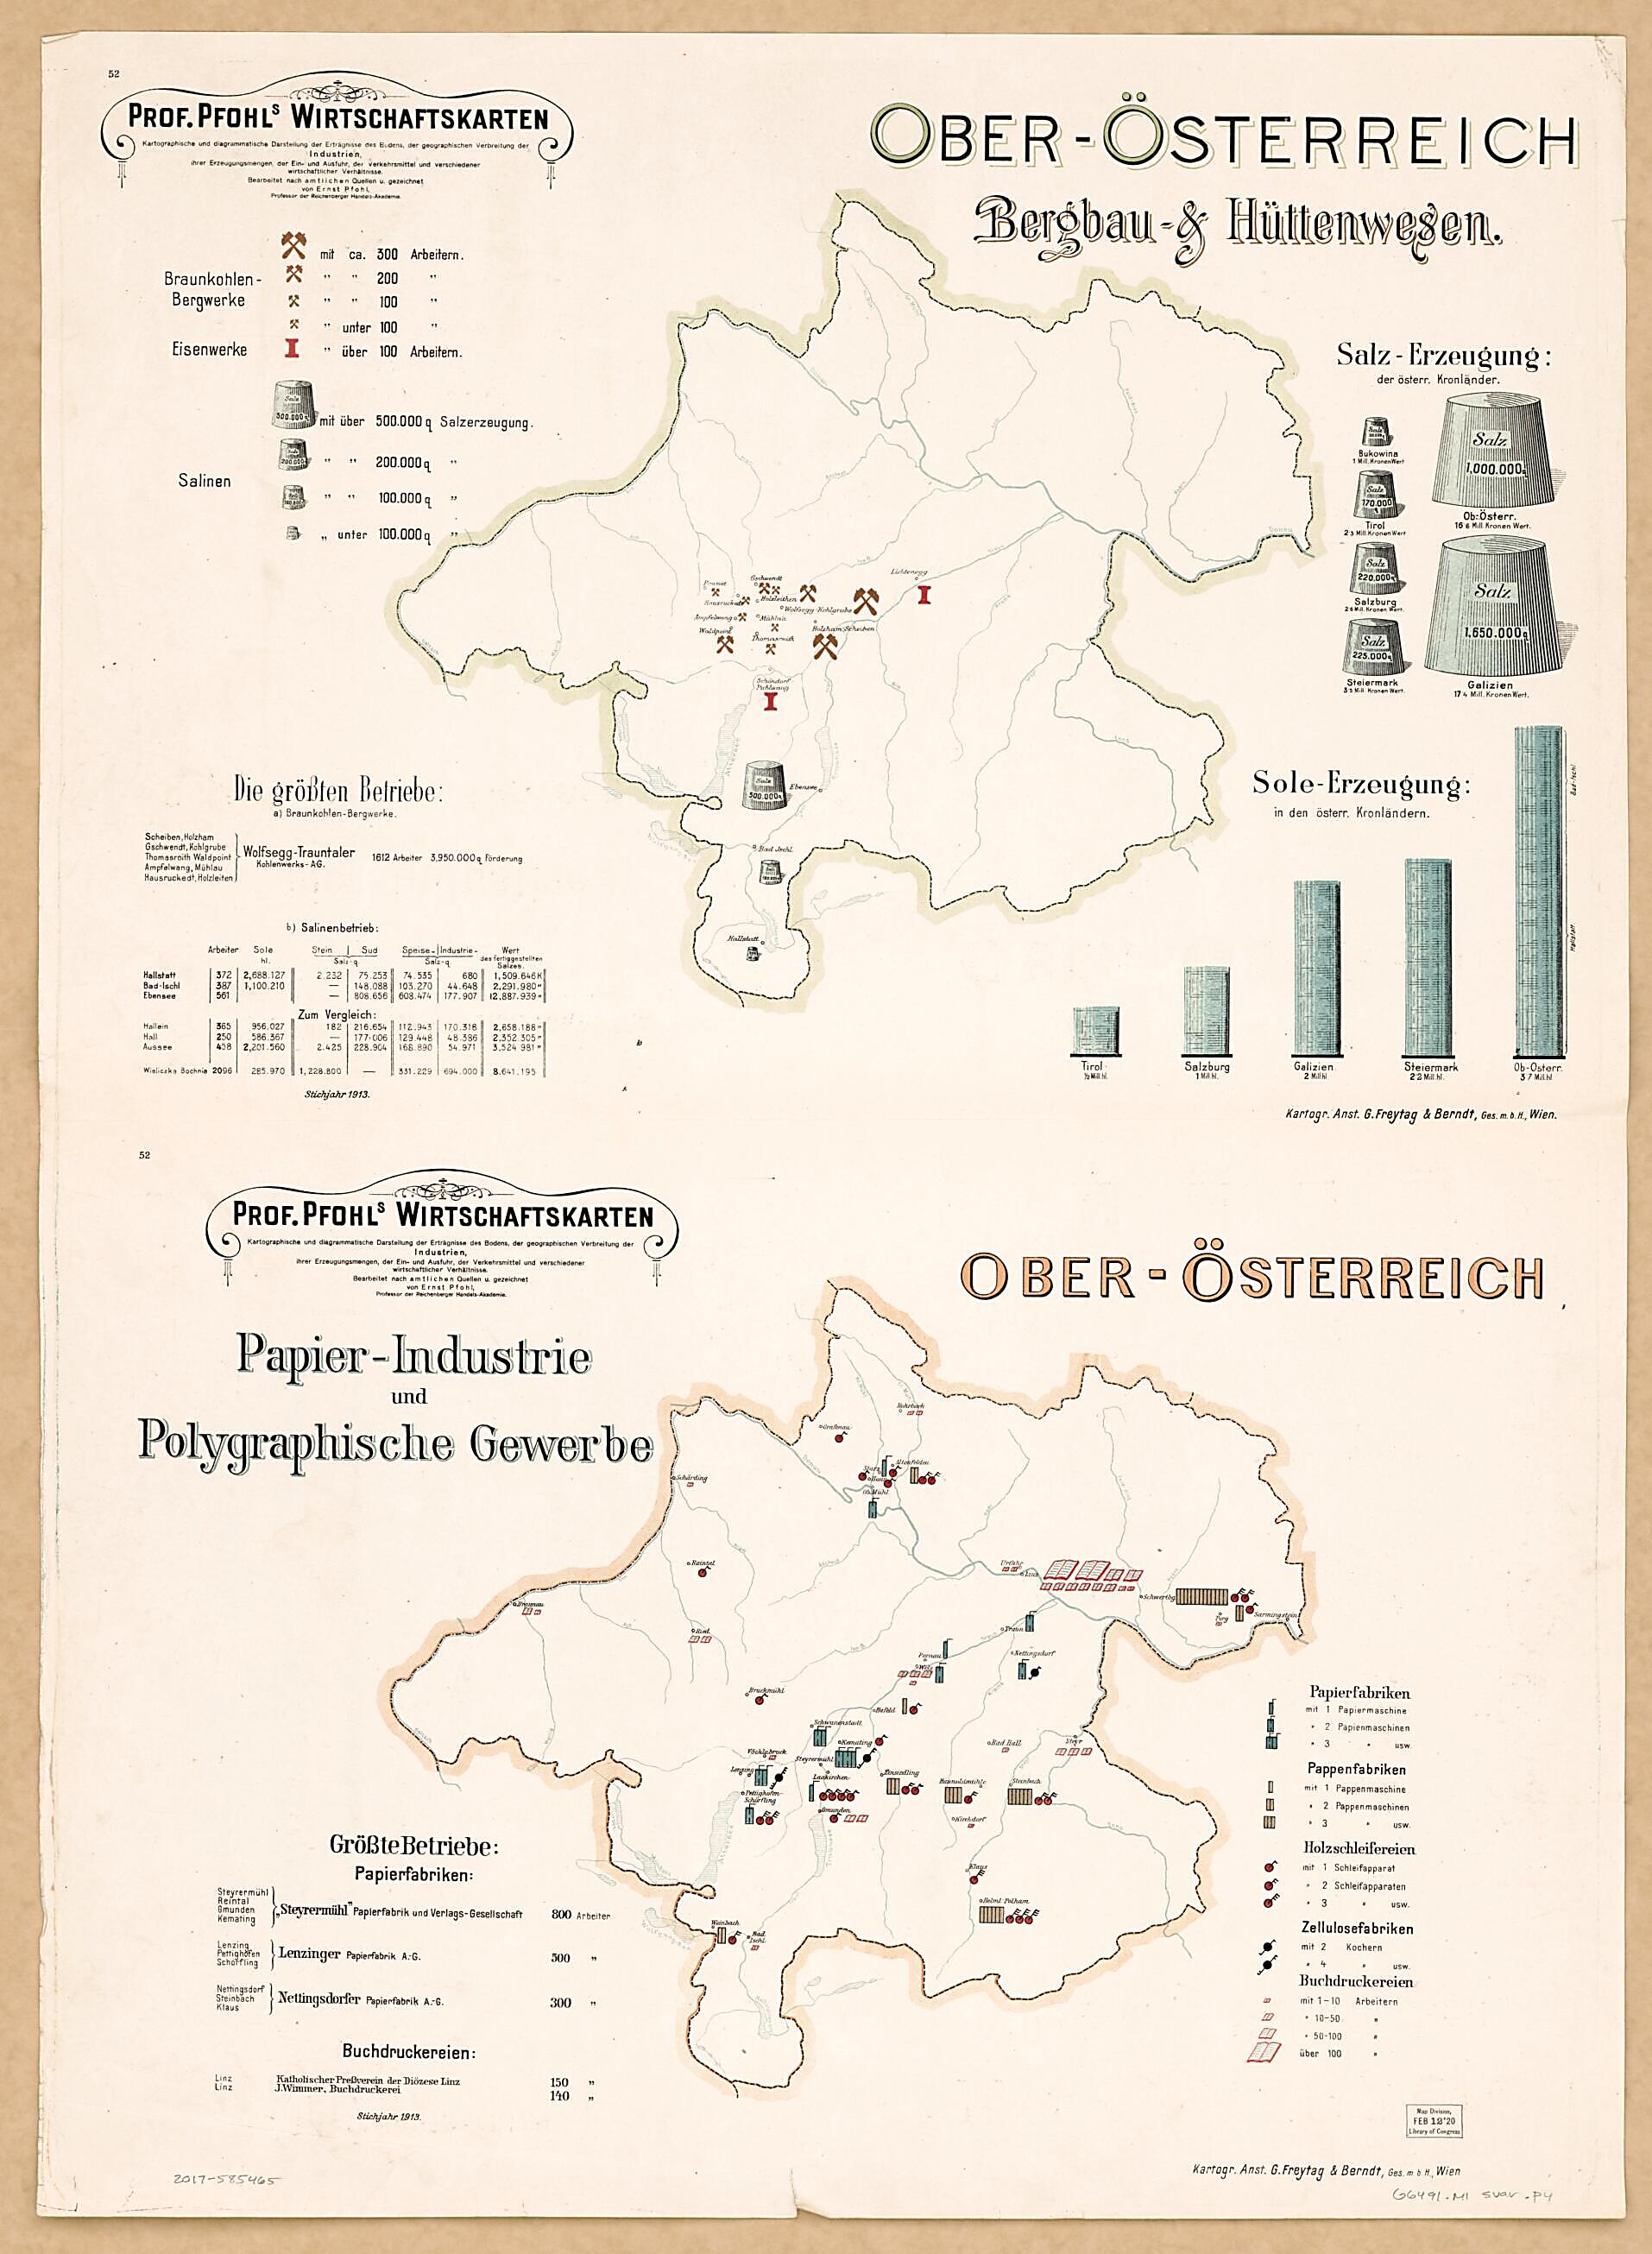 This old map of Ober Osterrreich Bergbau &amp; Huttenwesen; Ober Osterrreich Papier-Industrie Und Polygraphische Gewerbe from Prof. Pfohls Wirtschaftskarten from 1913 was created by Ernst Pfohl in 1913